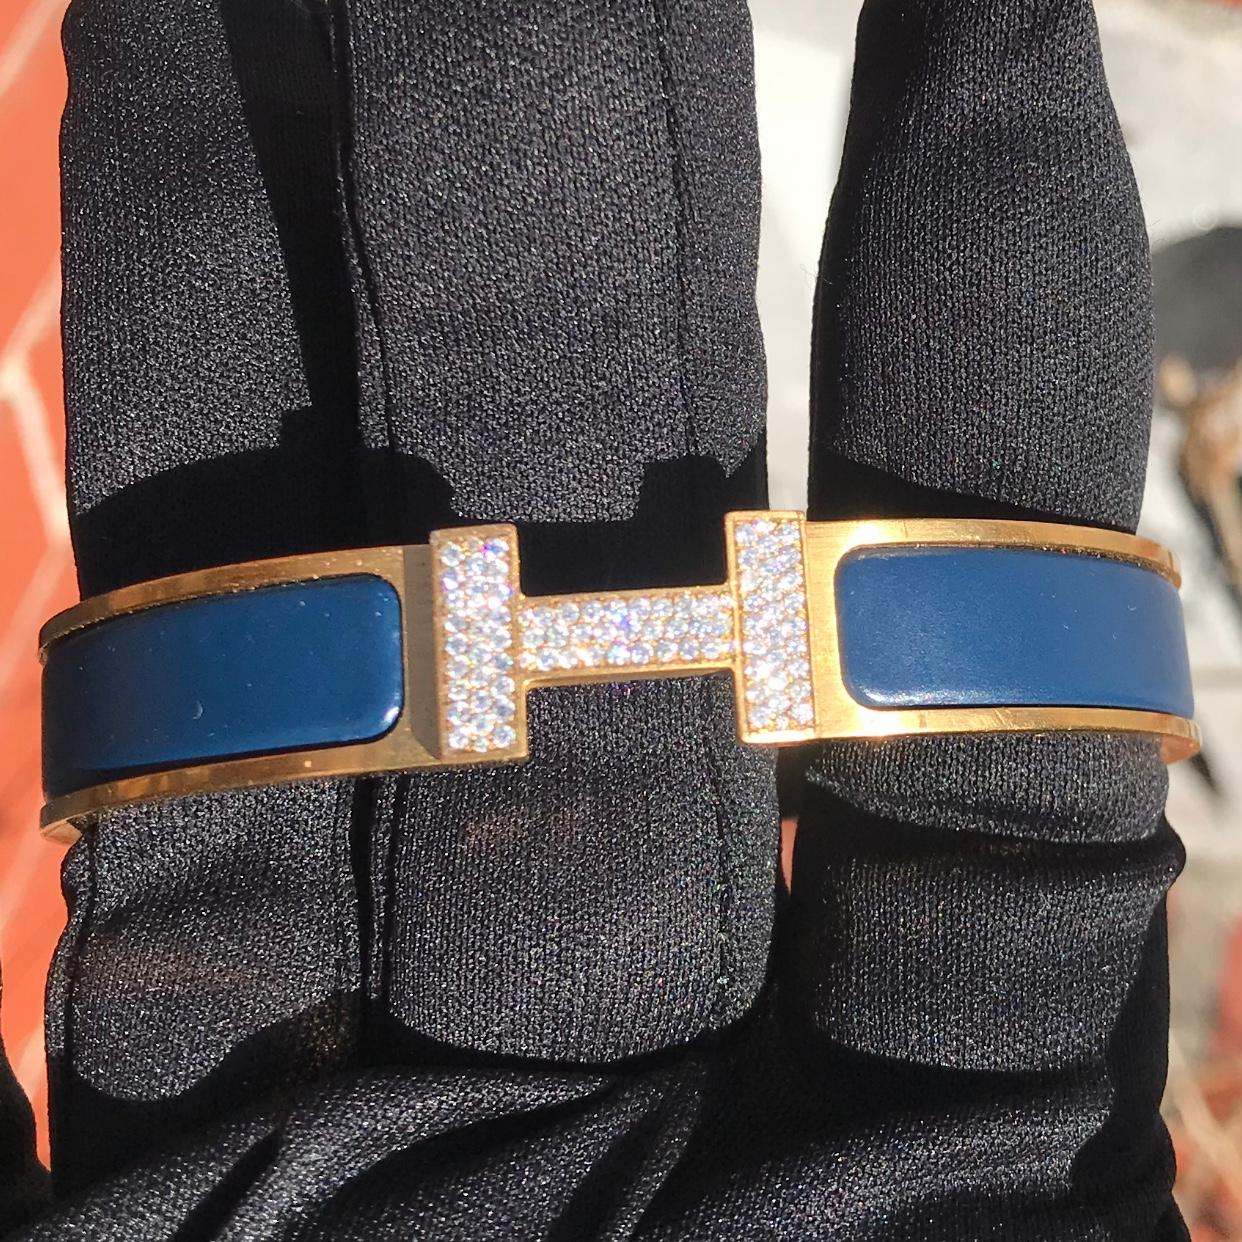 Bracelet Hermes Clic H avec diamants sur mesure, complet avec boîte d'origine.

Un bracelet Hermes Clic H taille GM en bleu et or est serti à la main d'environ 1,25 carats de diamants naturels VS-SI. Les diamants brillent de manière étonnante, même